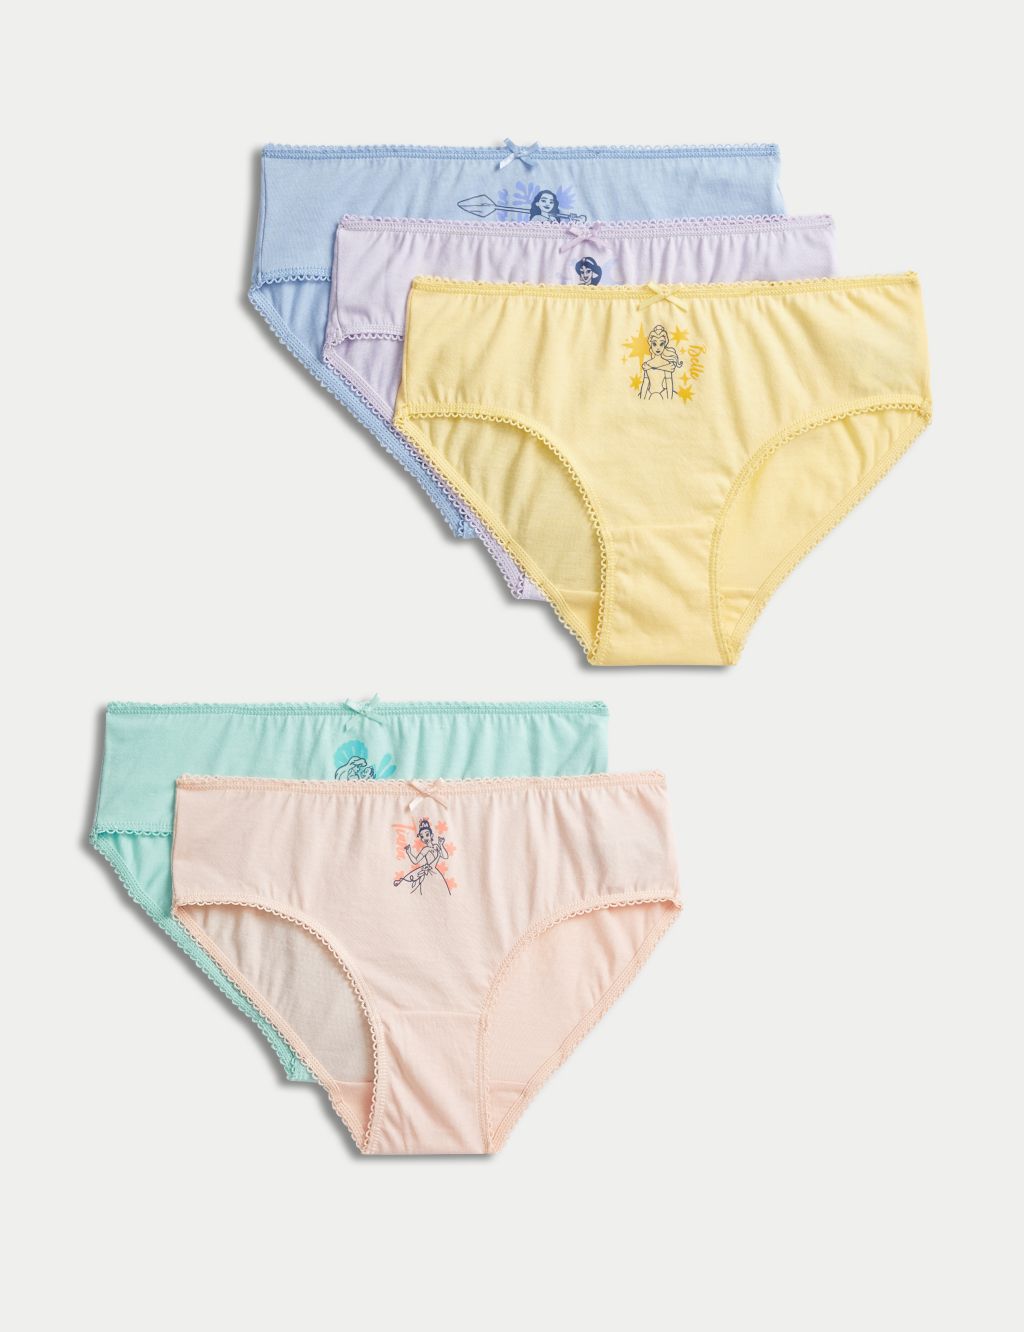 Disney princess kids underwear set 3 briefs pants